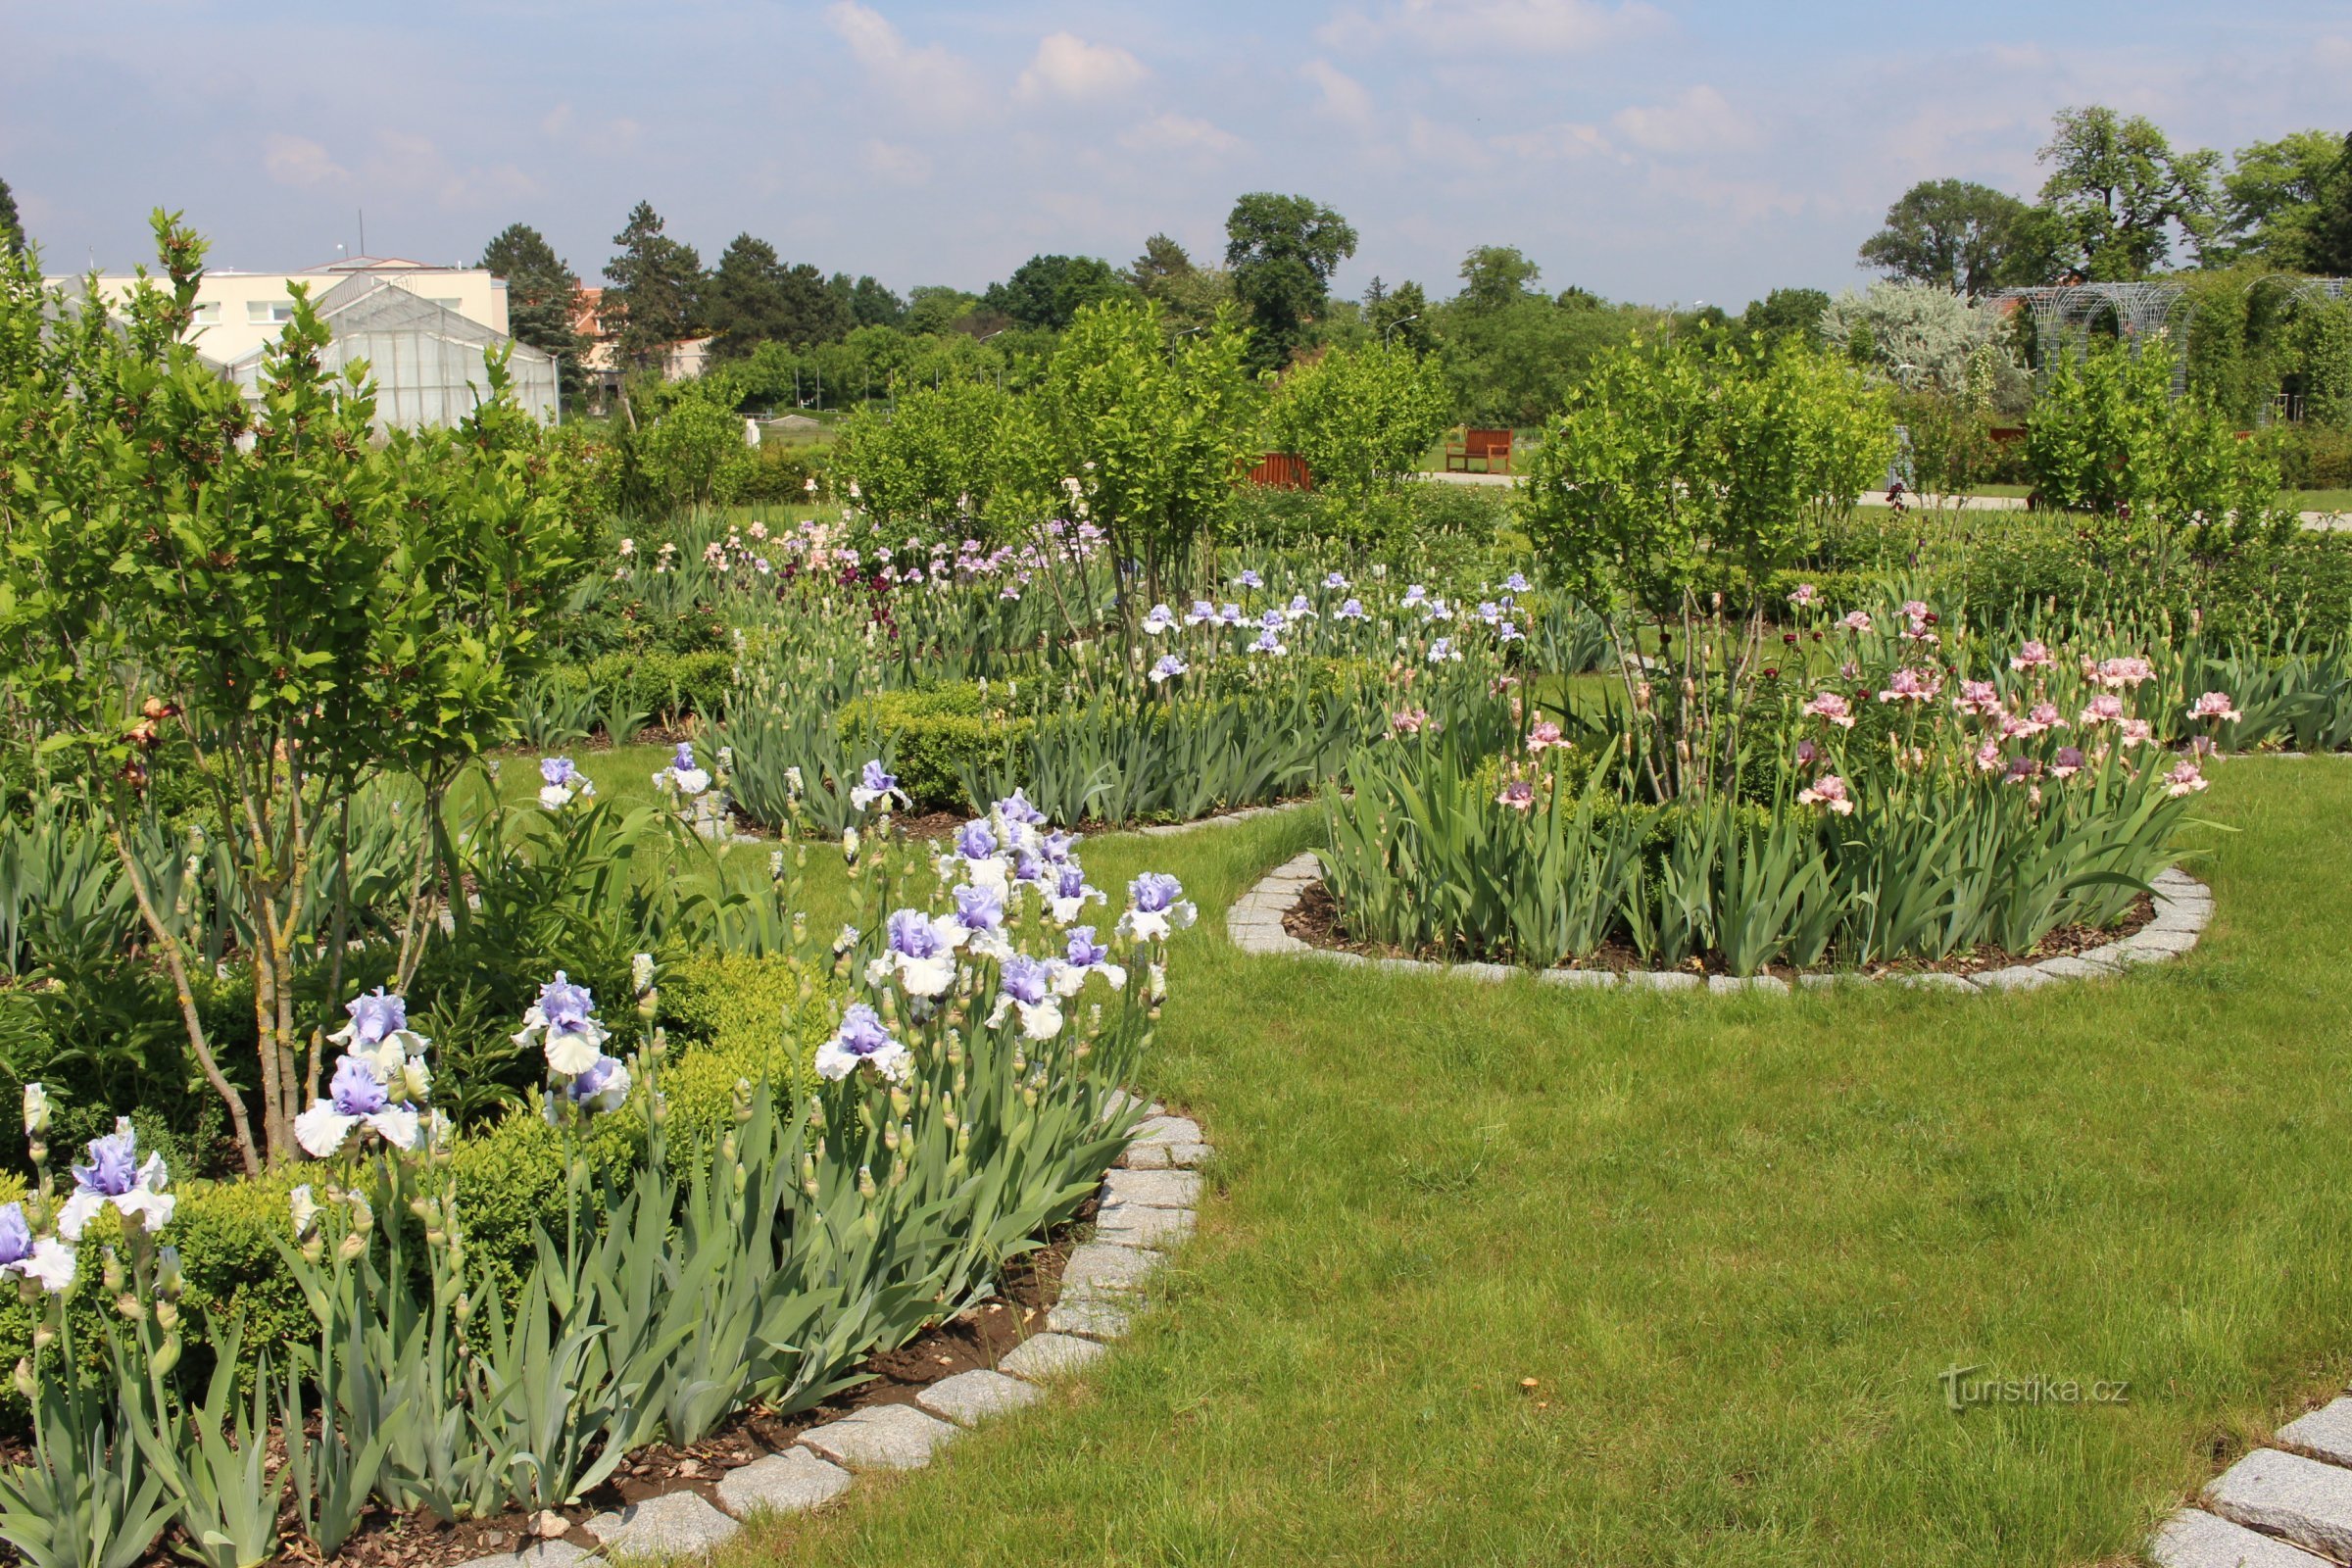 Lednice - Un labirint al naturii și un paradis al grădinilor